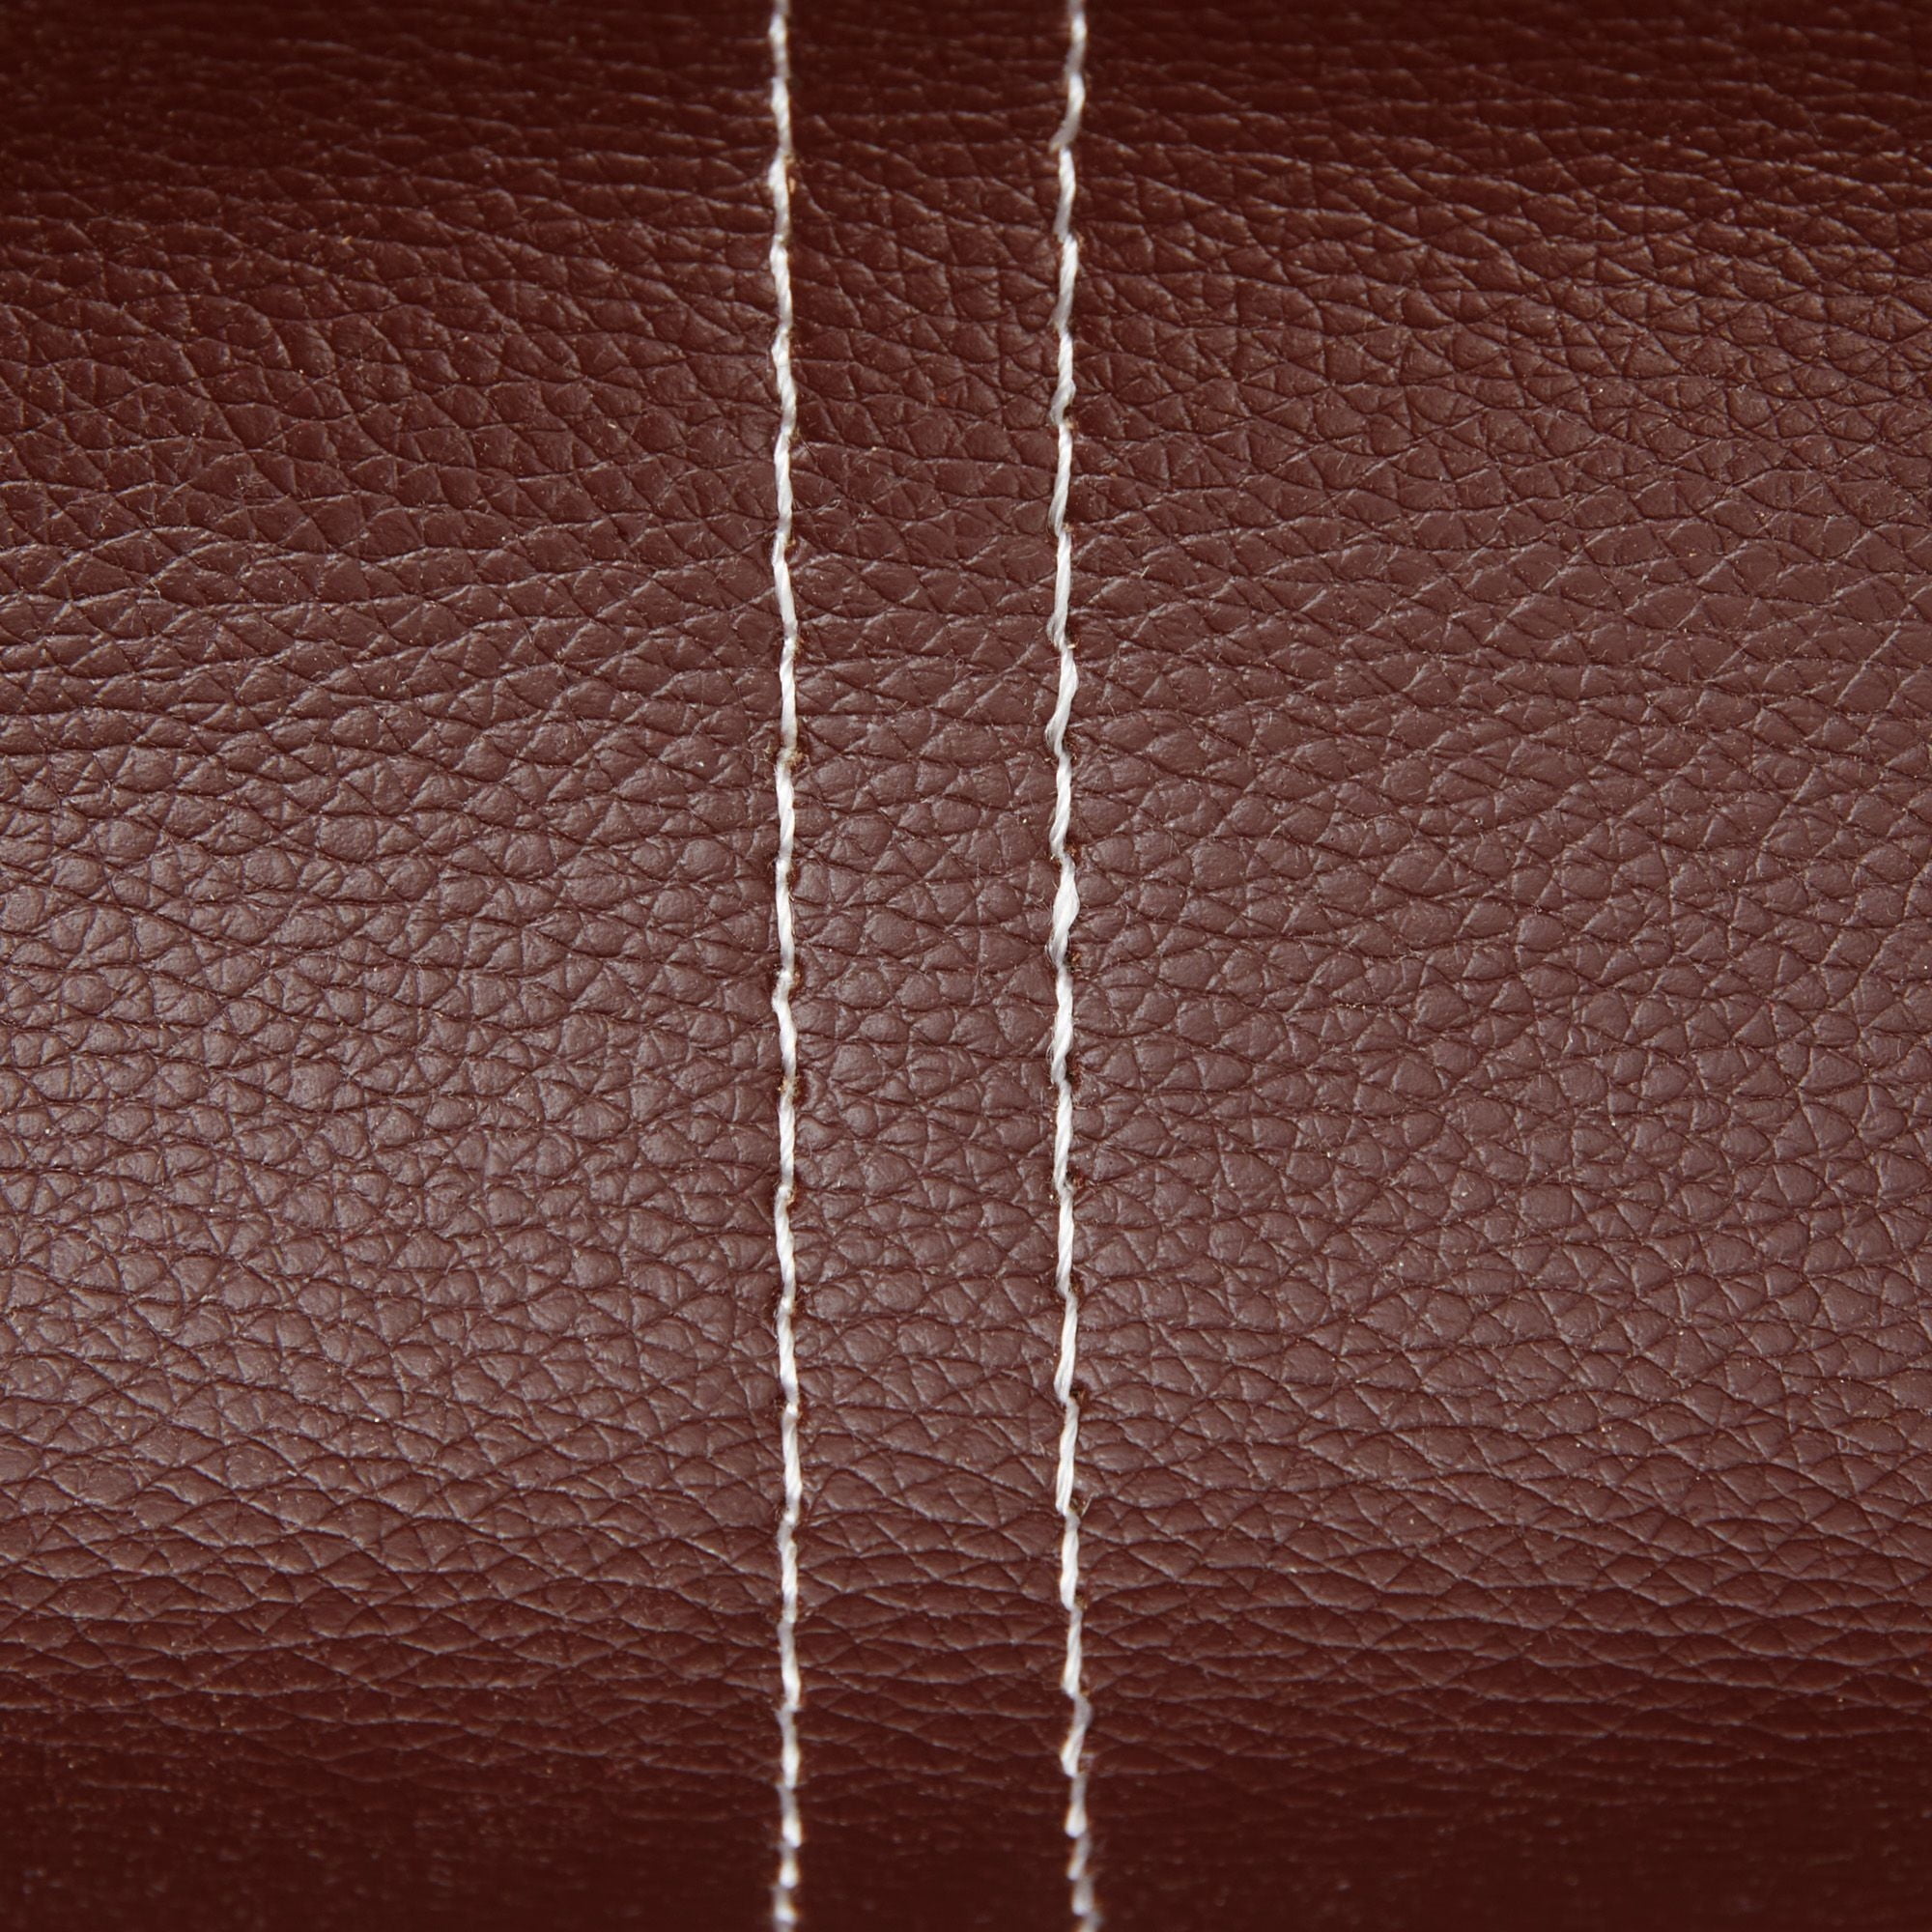 Jkayla Leather Tray Winston Porter Size: 2 H x 9.8 W x 6.2 D